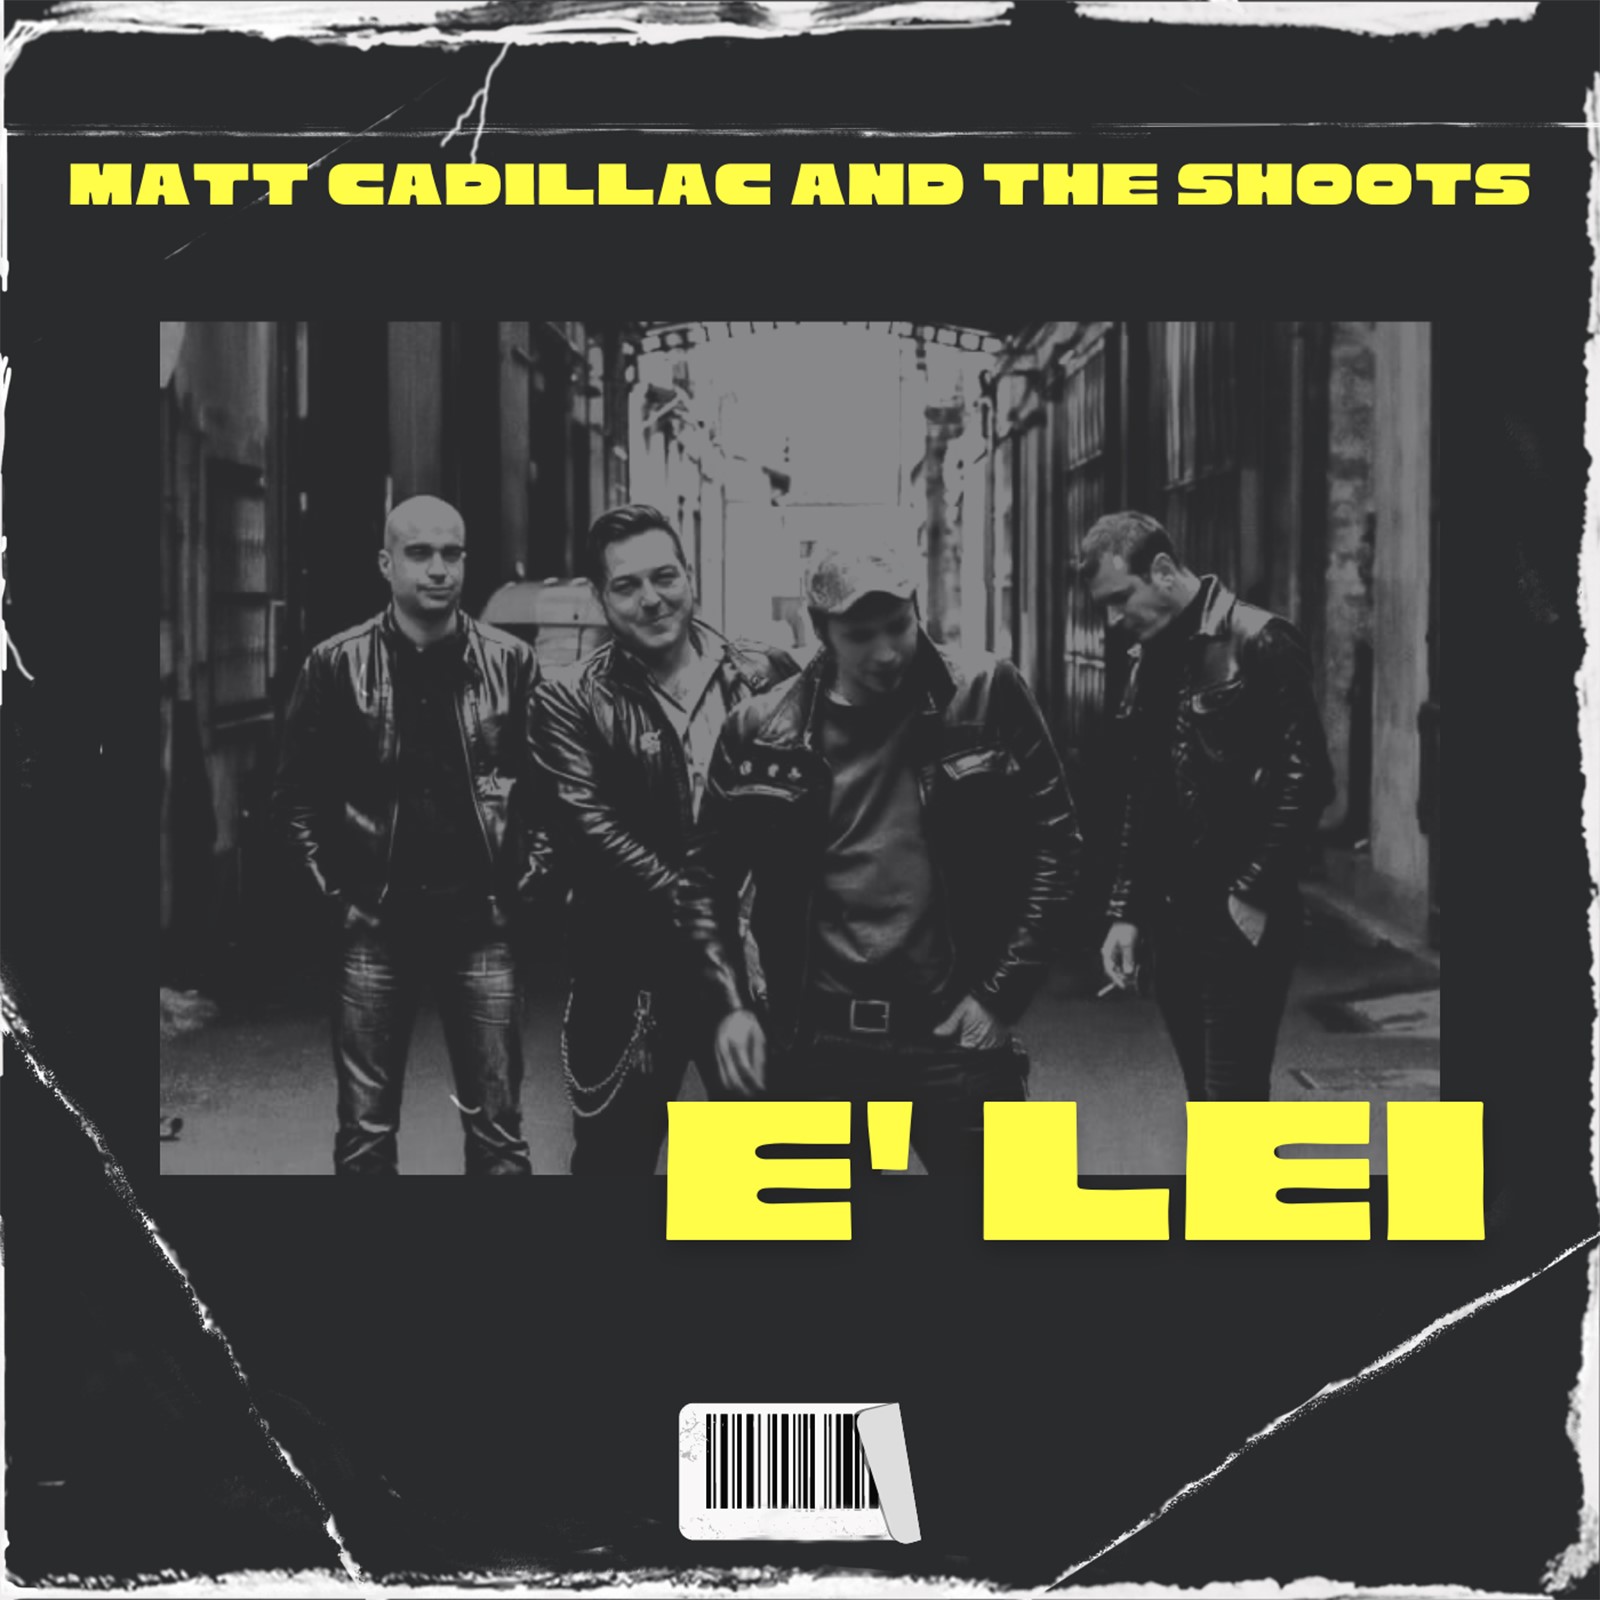 “E’ Lei“, il nuovo singolo in italiano dei Matt Cadillac & The Shoots